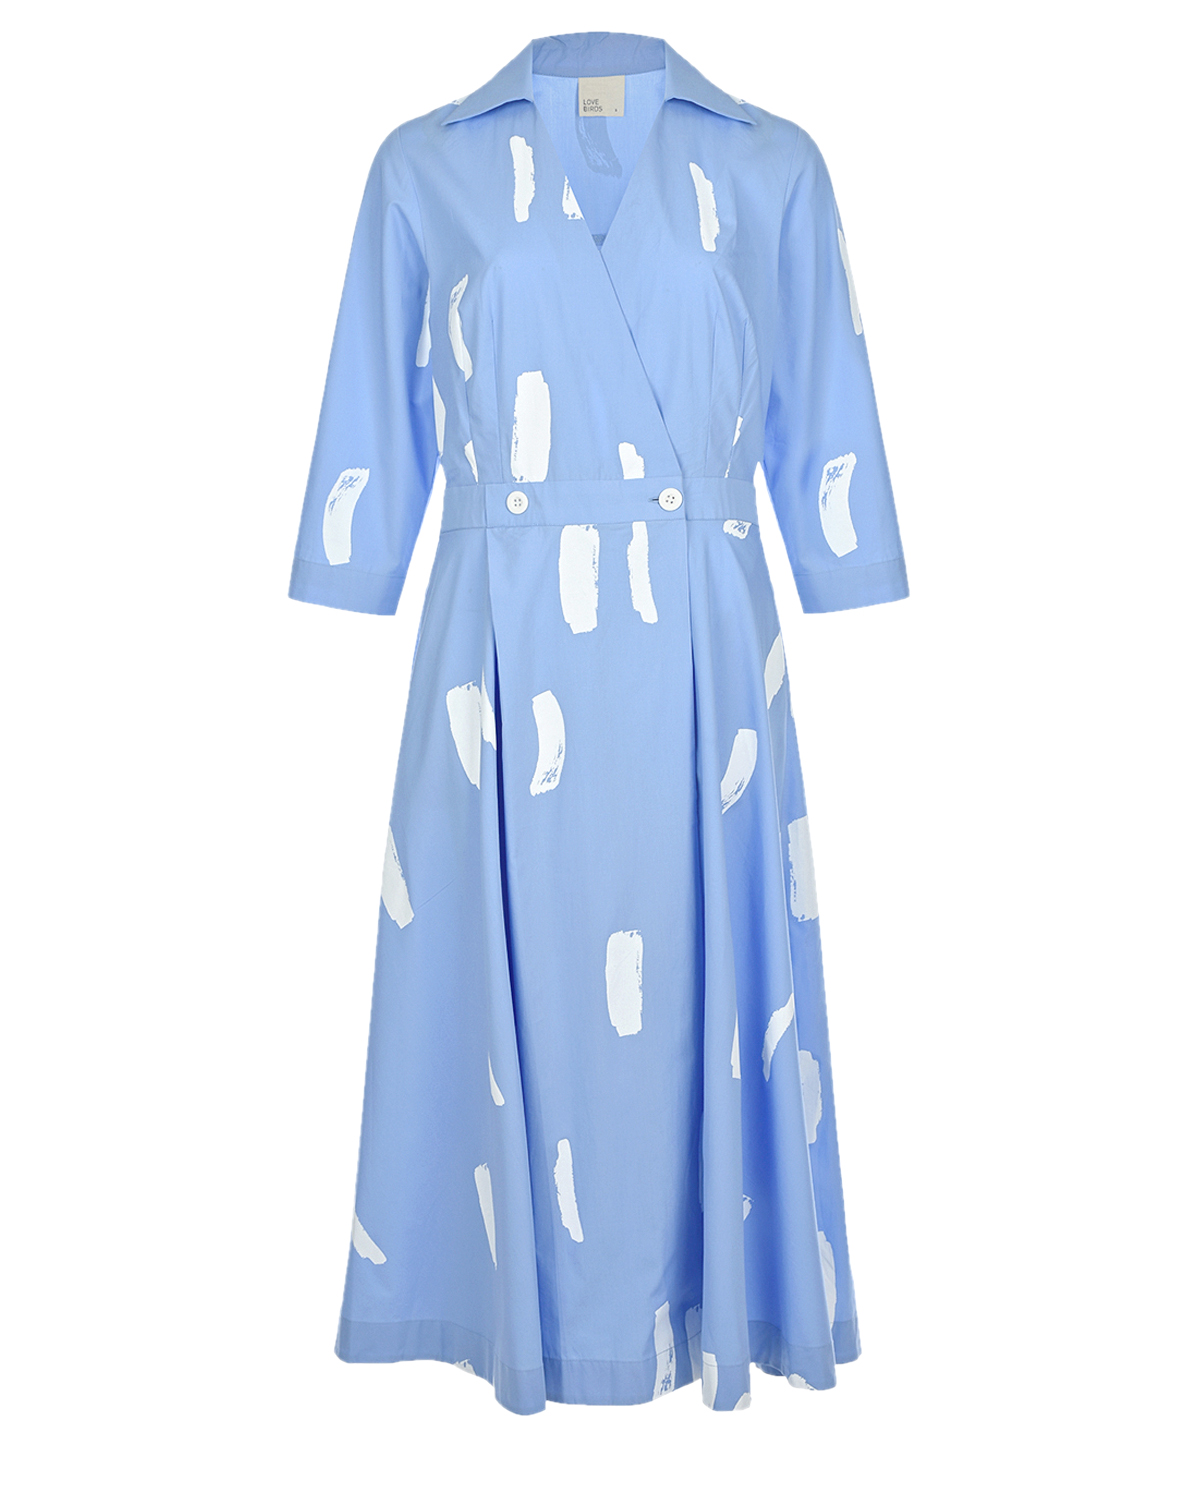 Голубое платье с абстрактным принтом LOVE BIRDS, размер 40, цвет голубой - фото 1